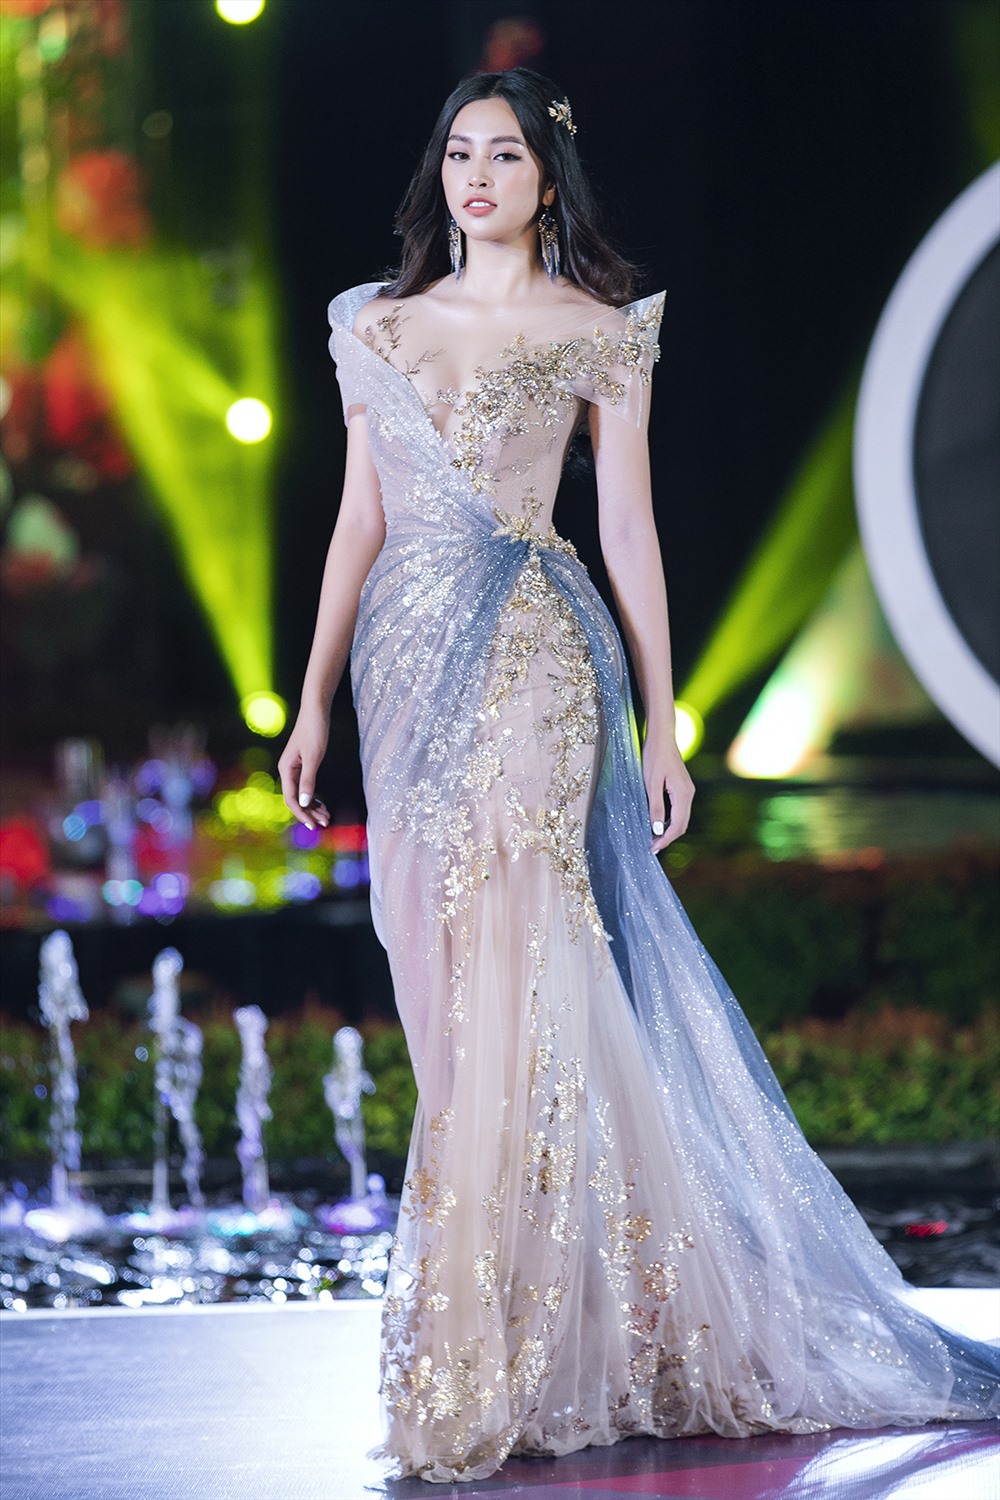 Các vedette xuất hiện trong đêm thi thời trang đều từng là Hoa hậu Việt Nam những năm trước. Ảnh: MWVN.